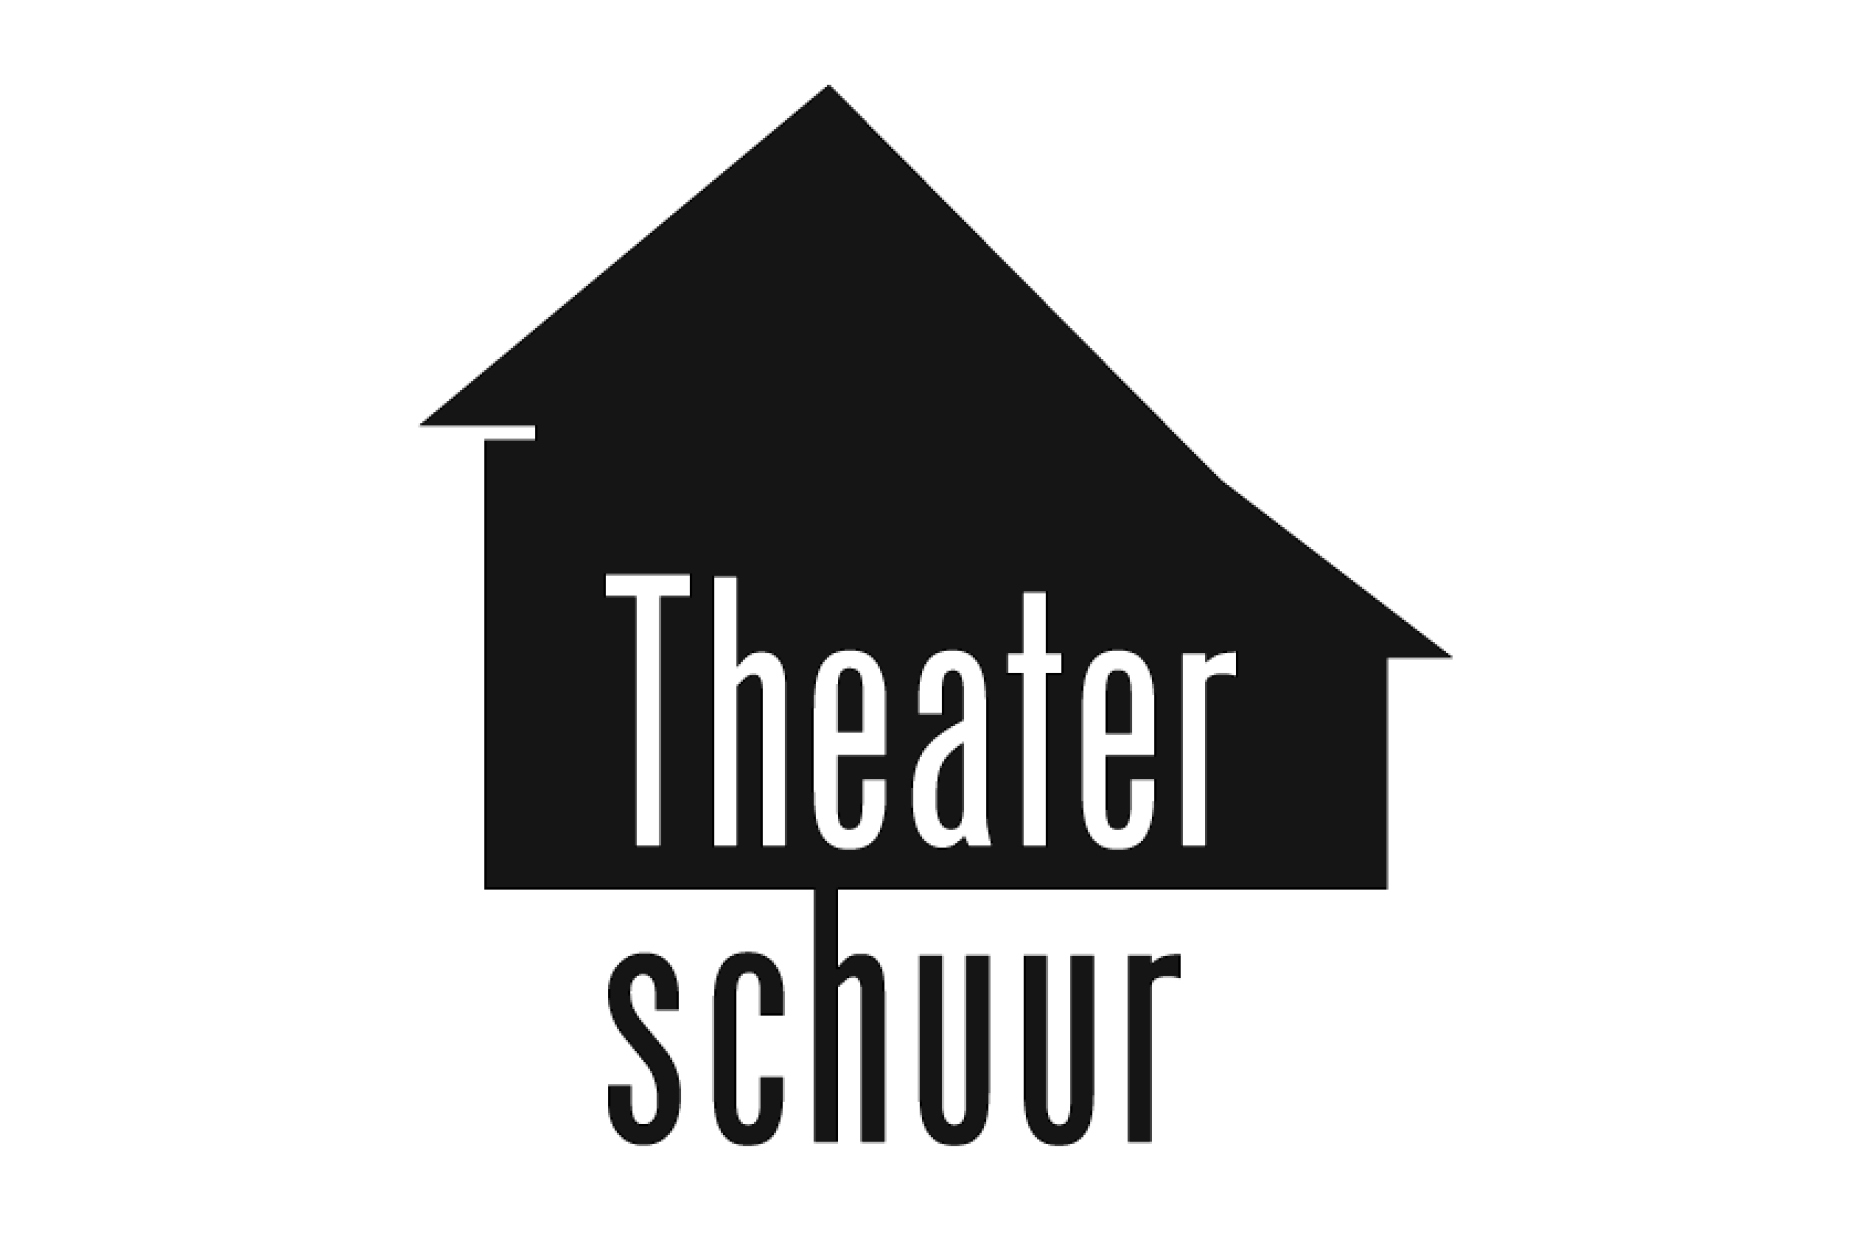 theaterschuur